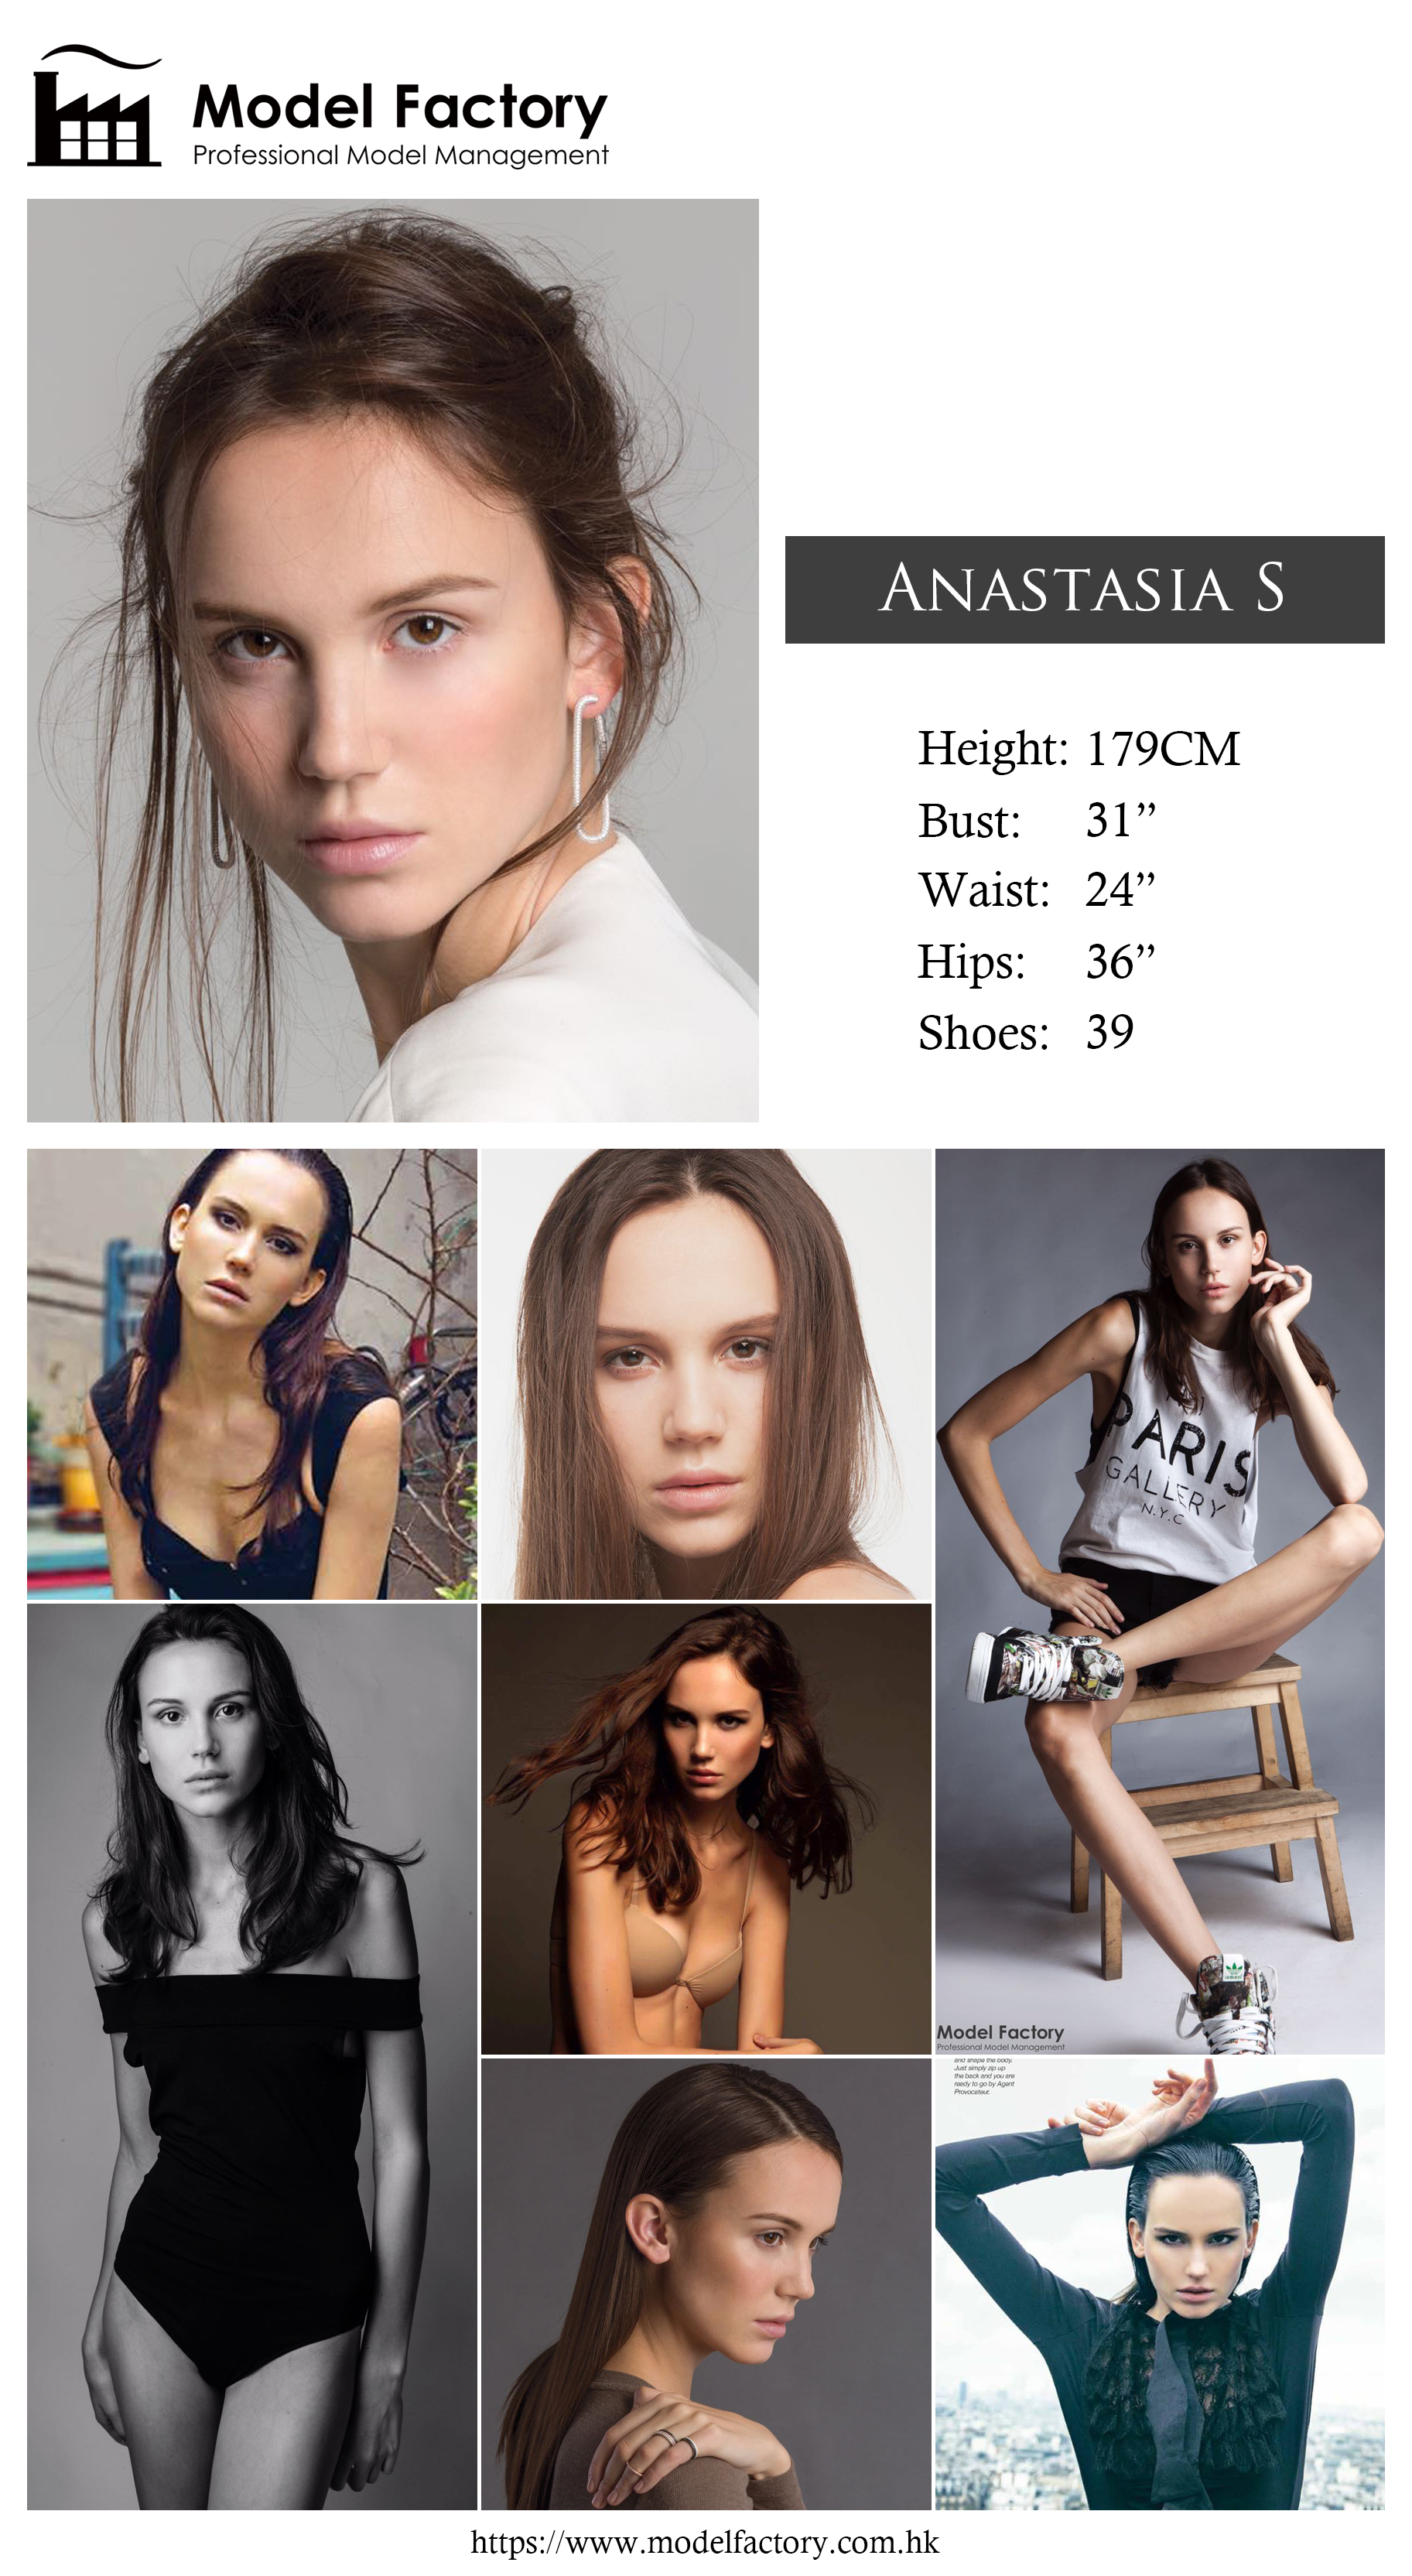 Model Factory Caucasian Female Model AnastasiaS